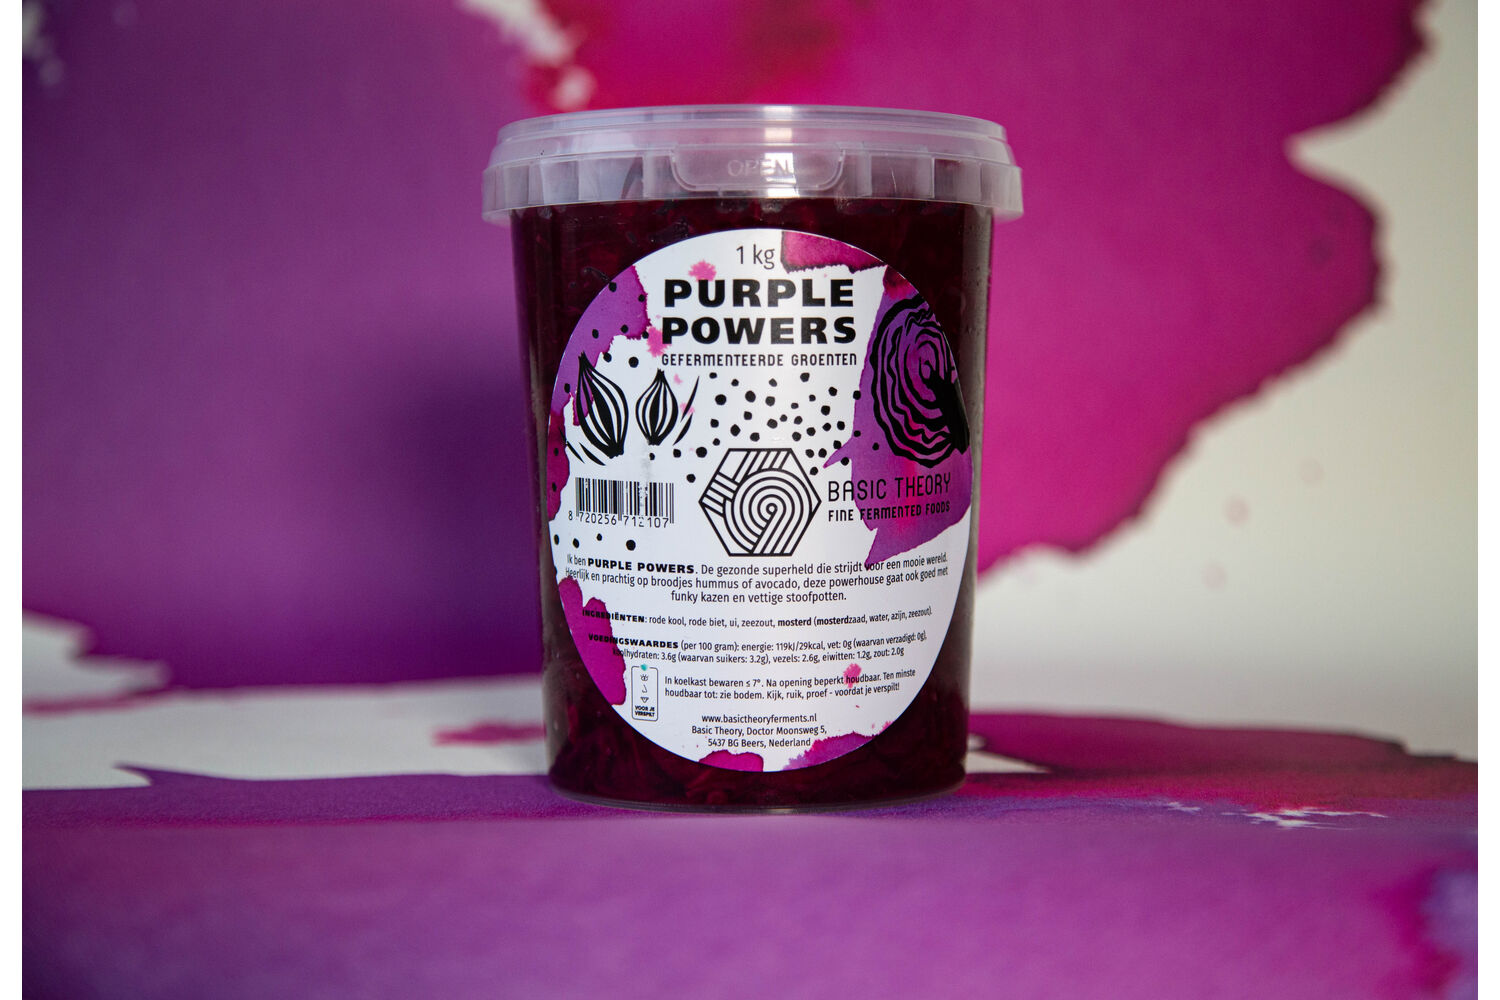 Purple powers pot 1kg 2